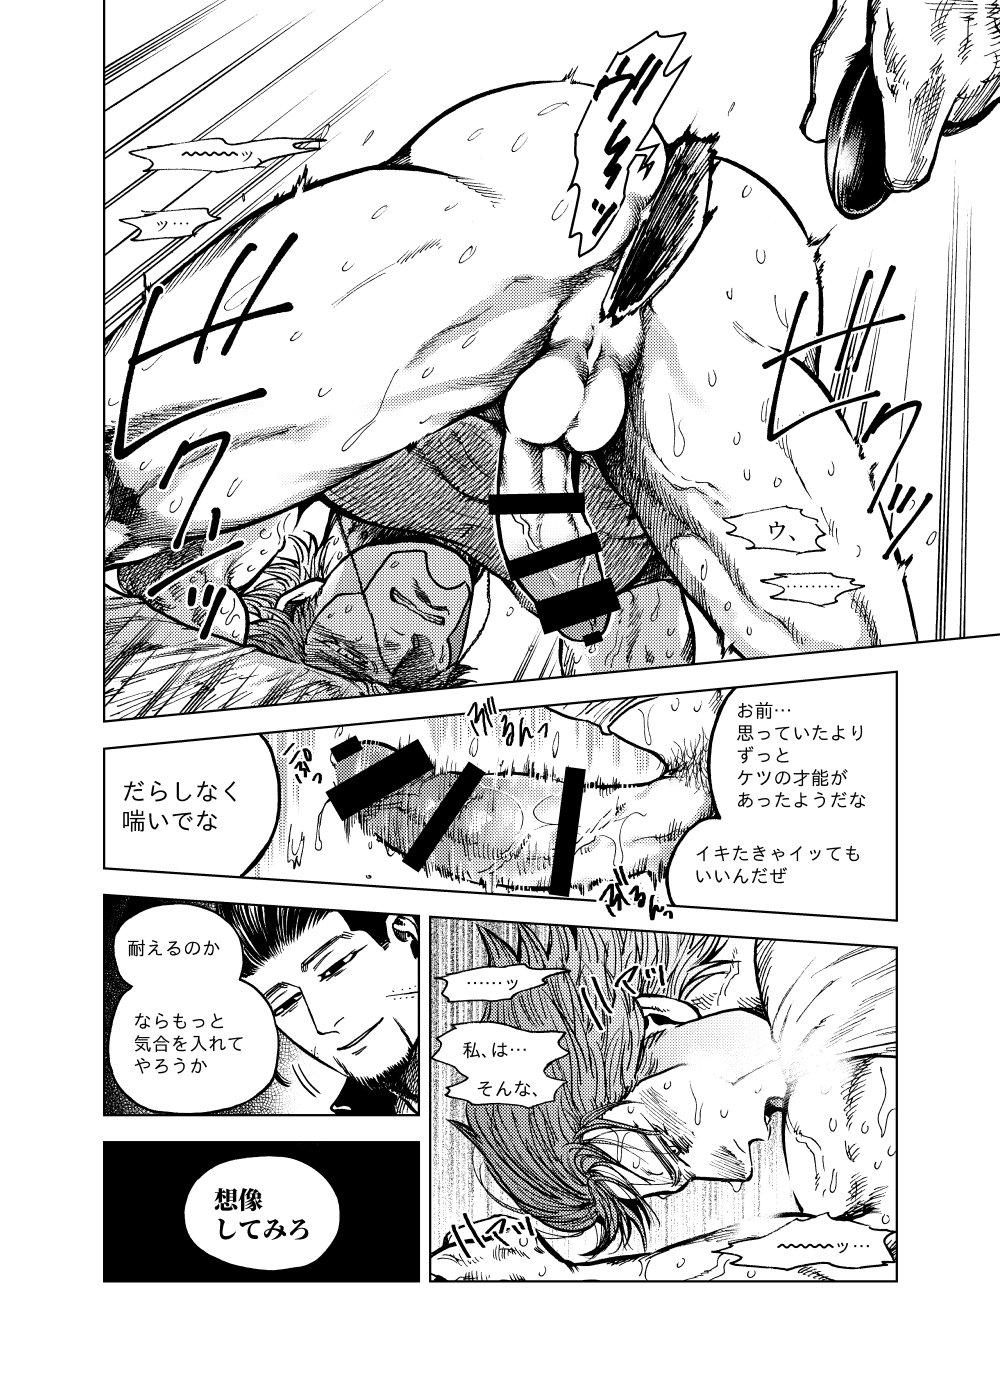 Macho Shōsha No Iu Koto Wa Zettai! - Golden kamuy Topless - Page 9